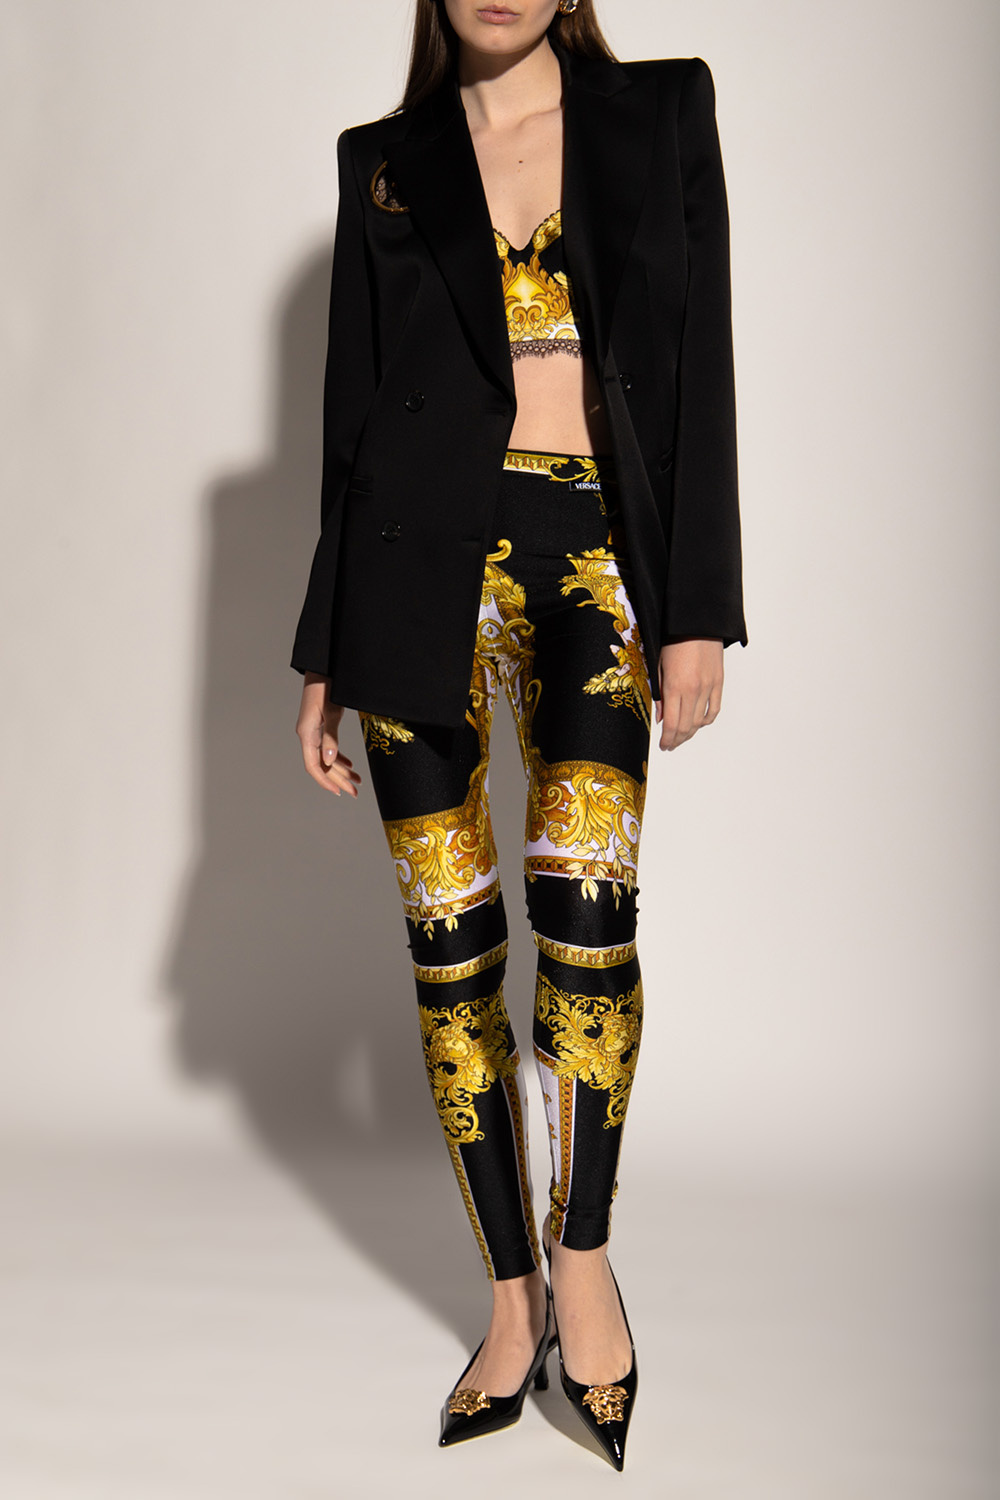 IetpShops, Versace Patterned leggings, TEEN sequin embellished leggings